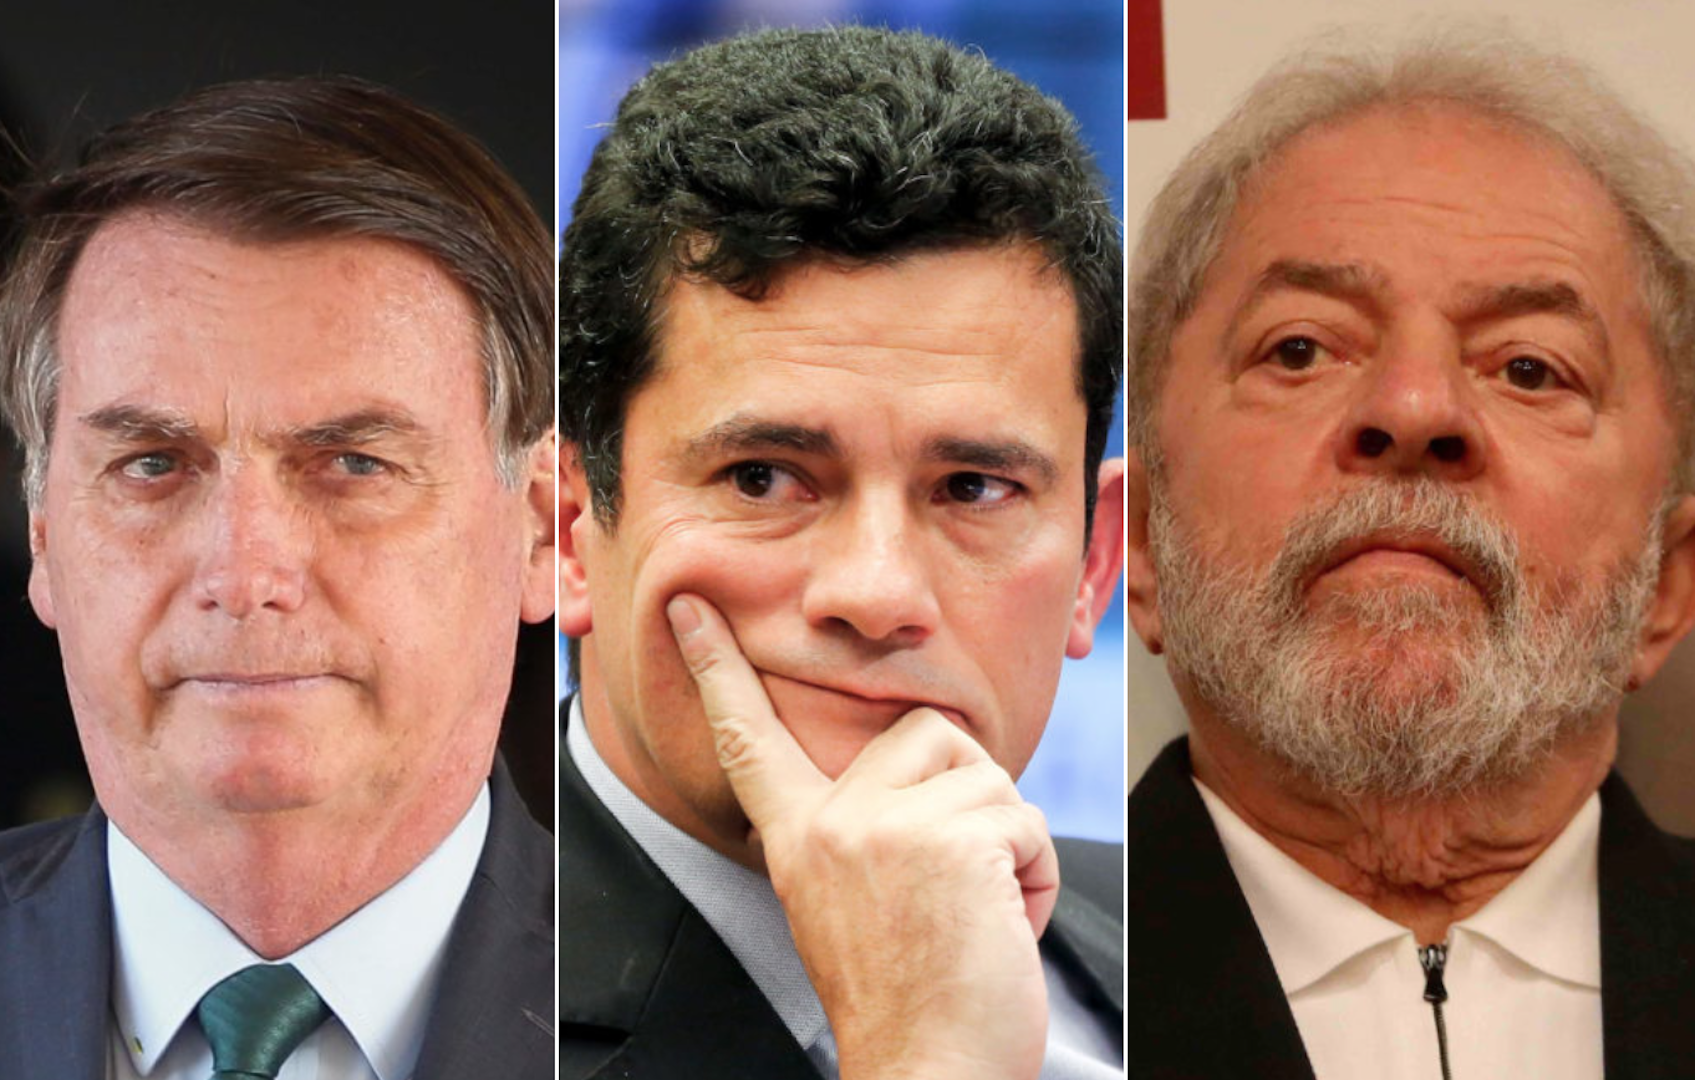 Índice de Popularidade Digital (IPD) mostra Bolsonaro estável, Lula em ascensão e Moro despontando no terceiro lugar